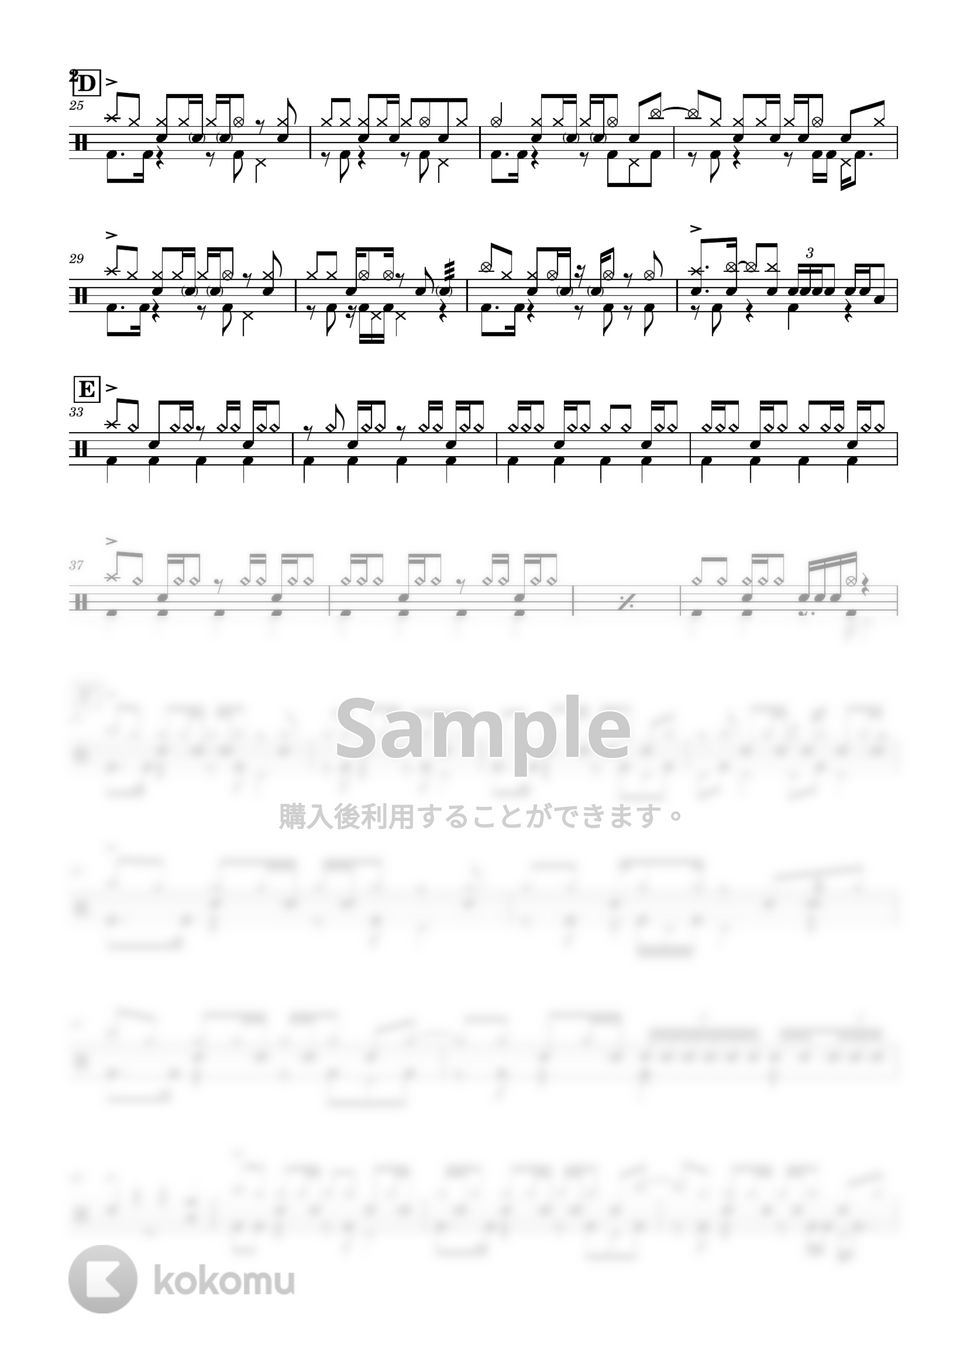 VOCALOID - 聖槍爆裂ボーイ by Cookie's Drum Score